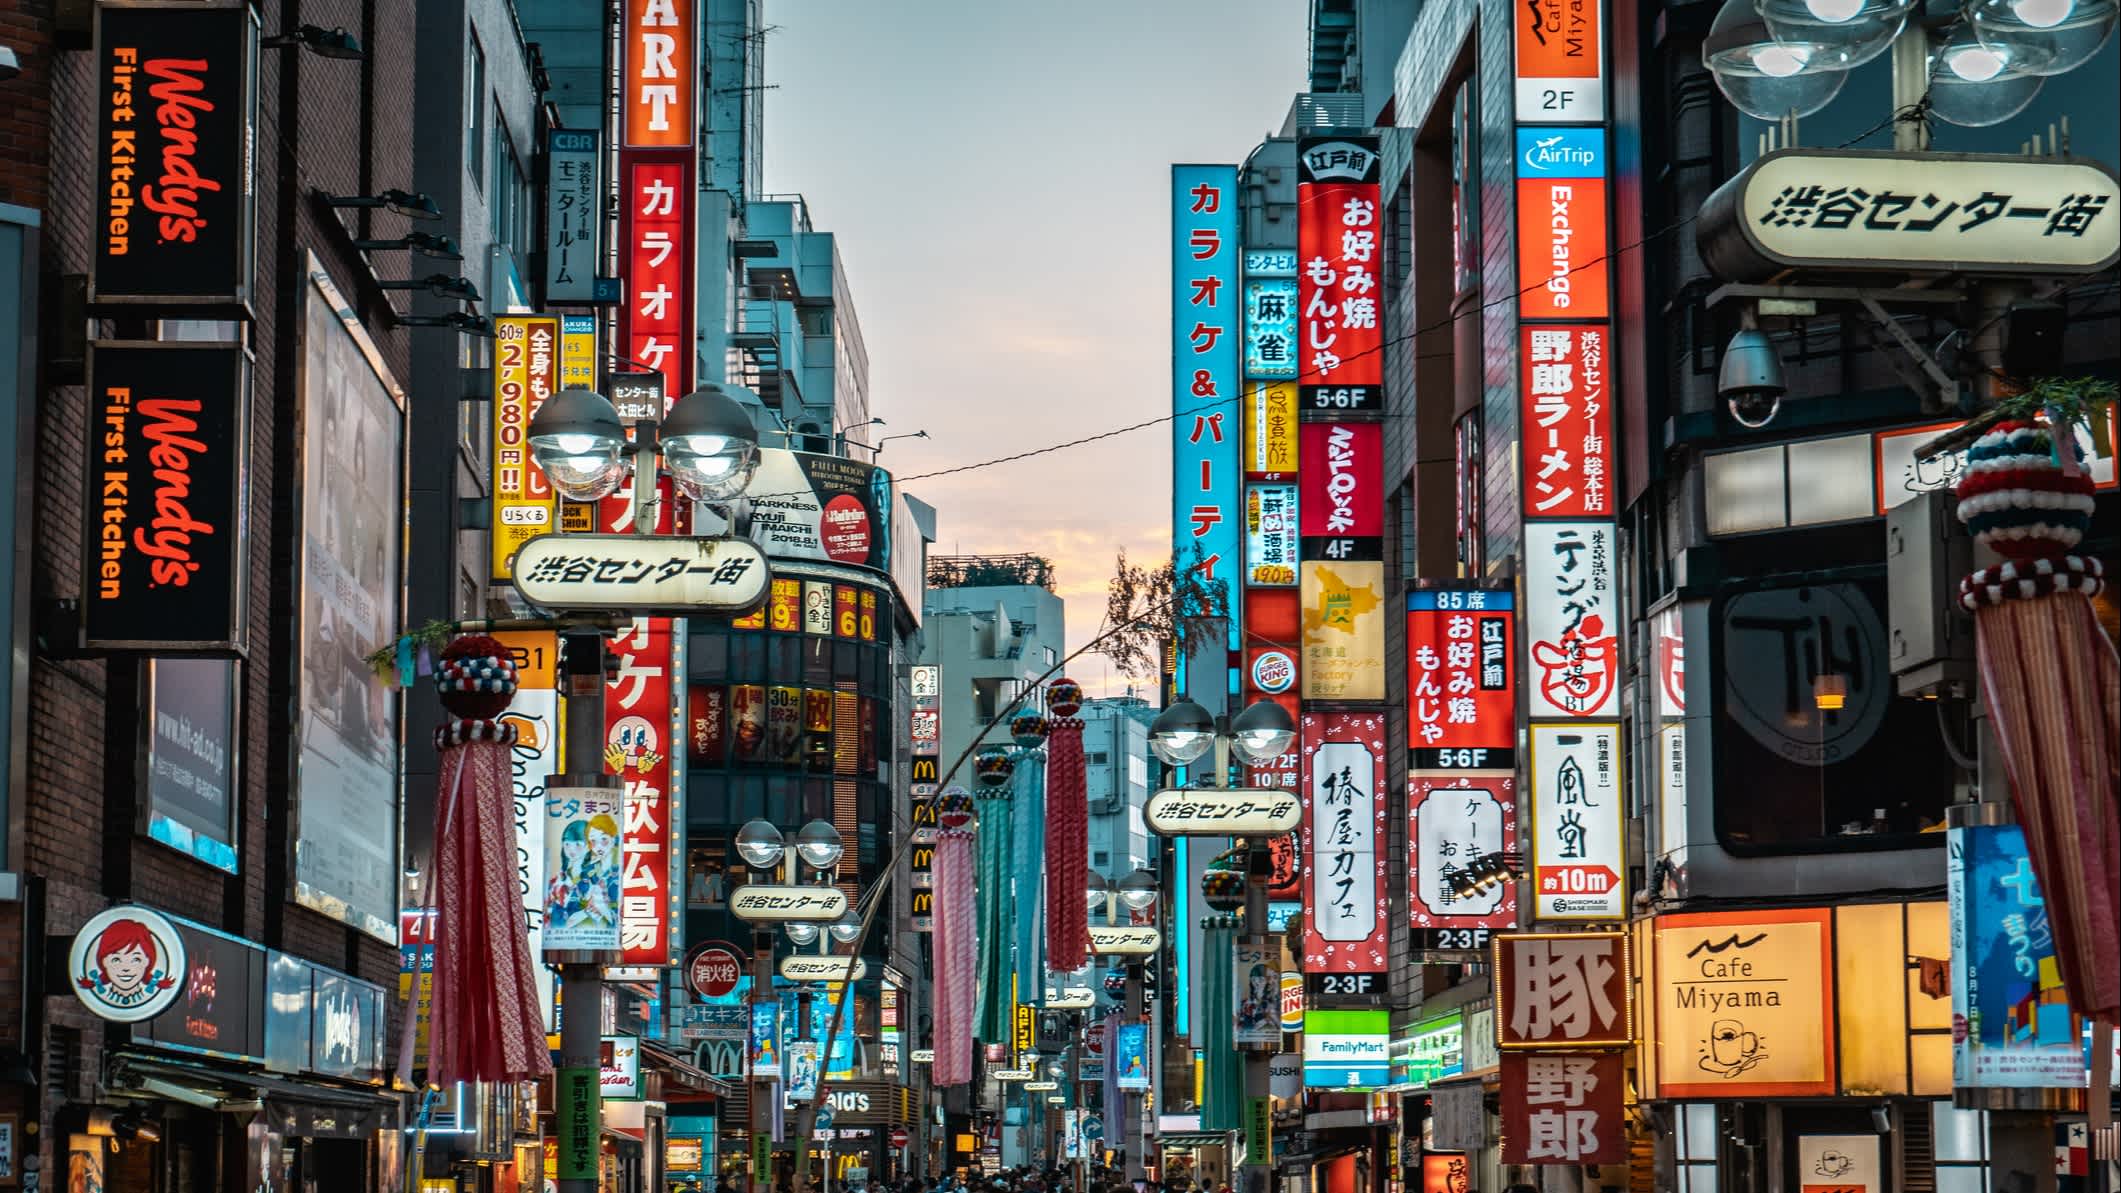 Blick auf die von Shibuya-Straße in Tokio, Japan

